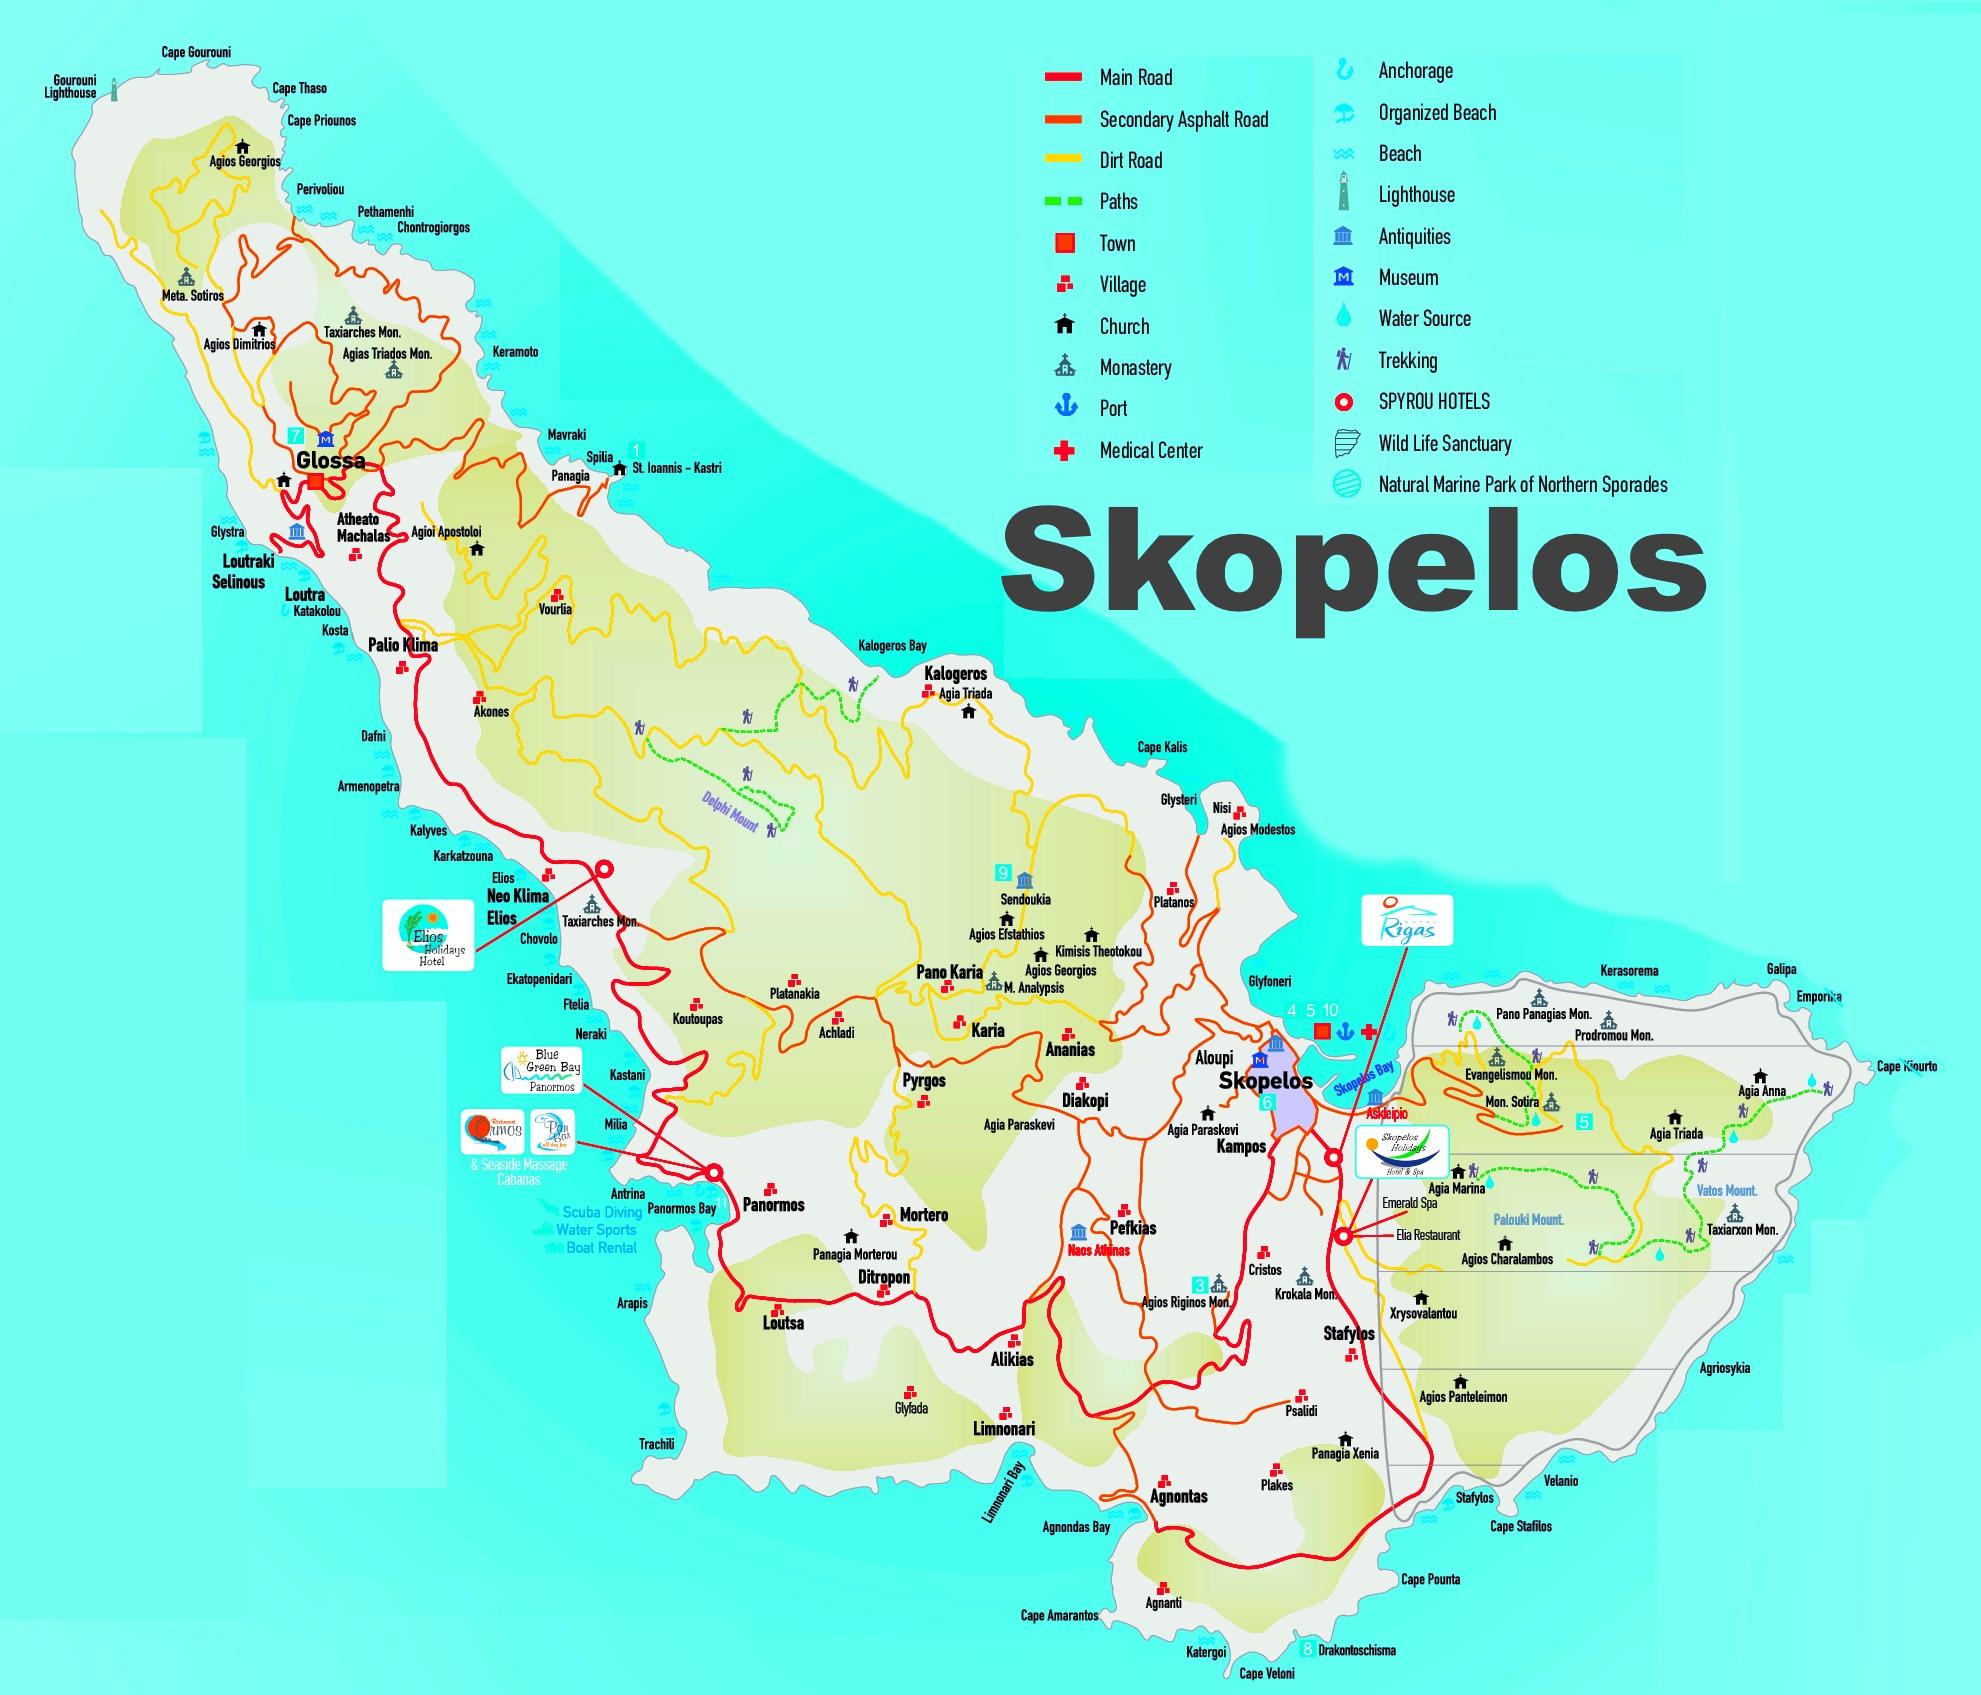 Skopelos-Grekland karta - Skopelos karta grekiska öarna (Södra Europa